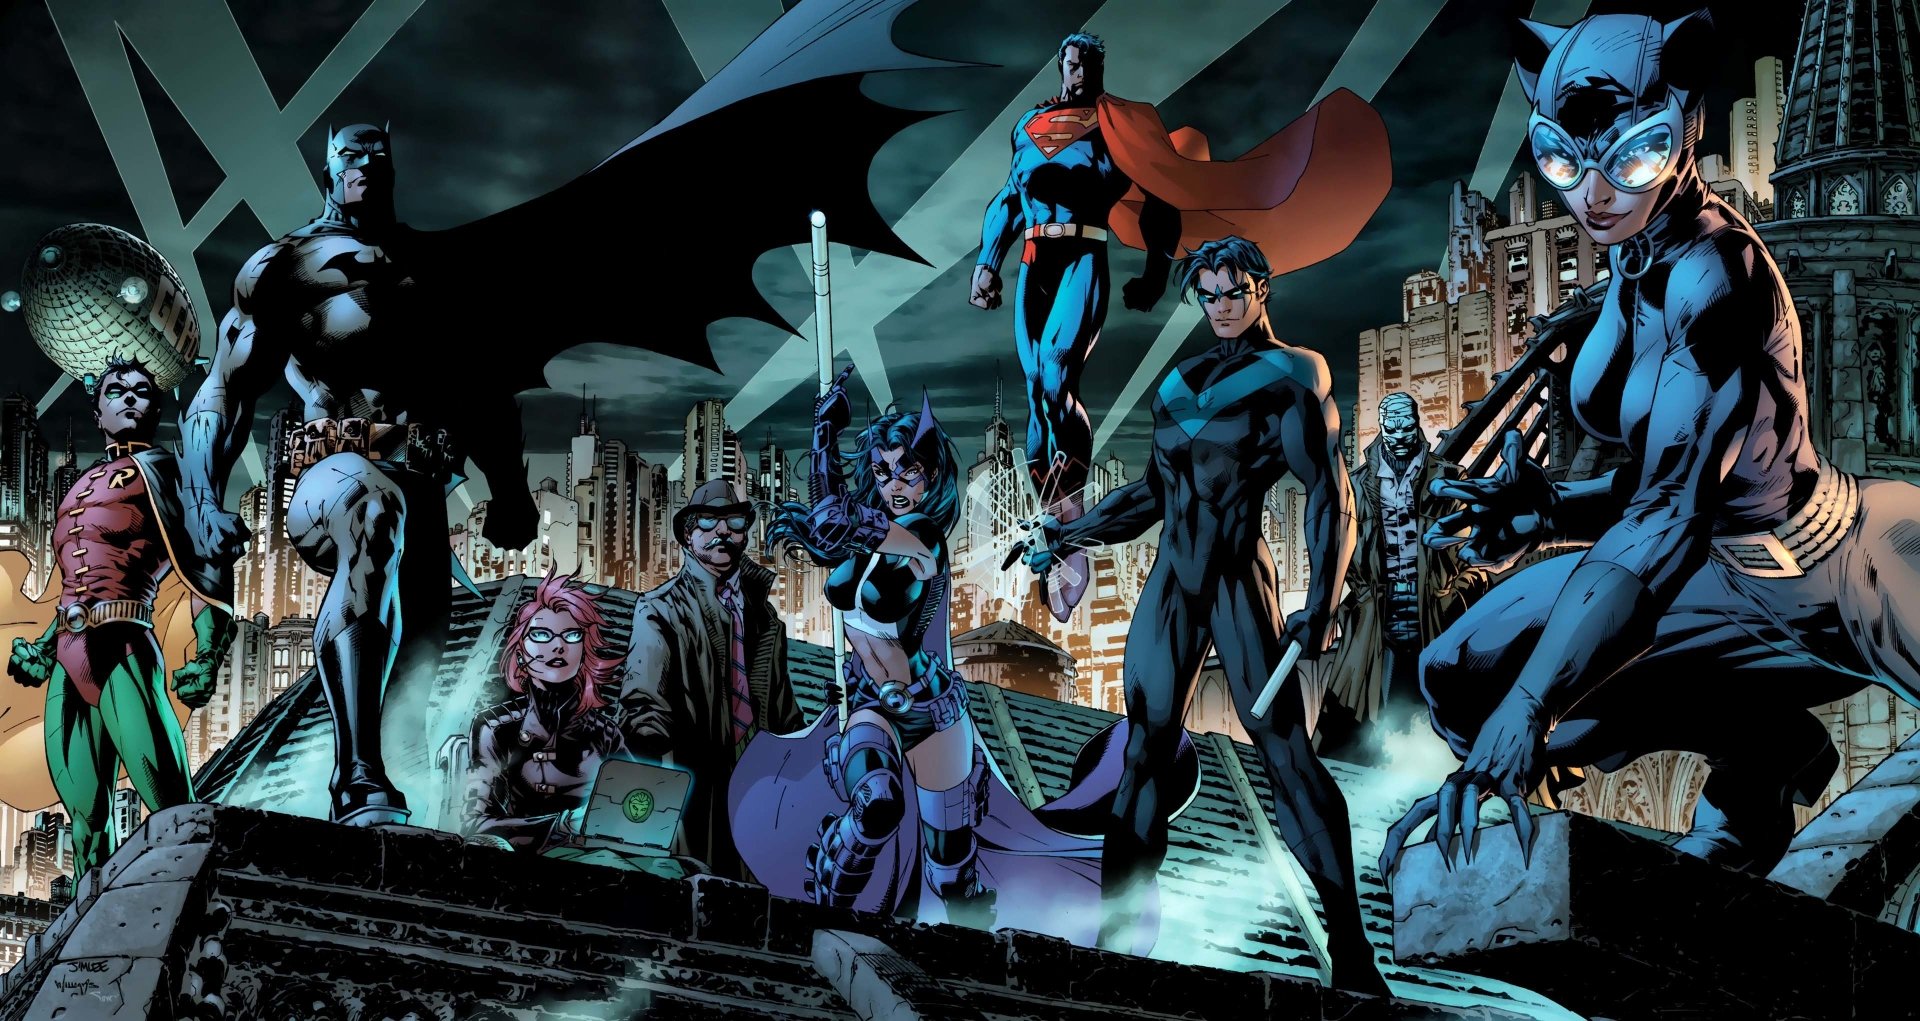 Fondos de Pantalla de Superhéroes de DC Comics, Wallpapers HD